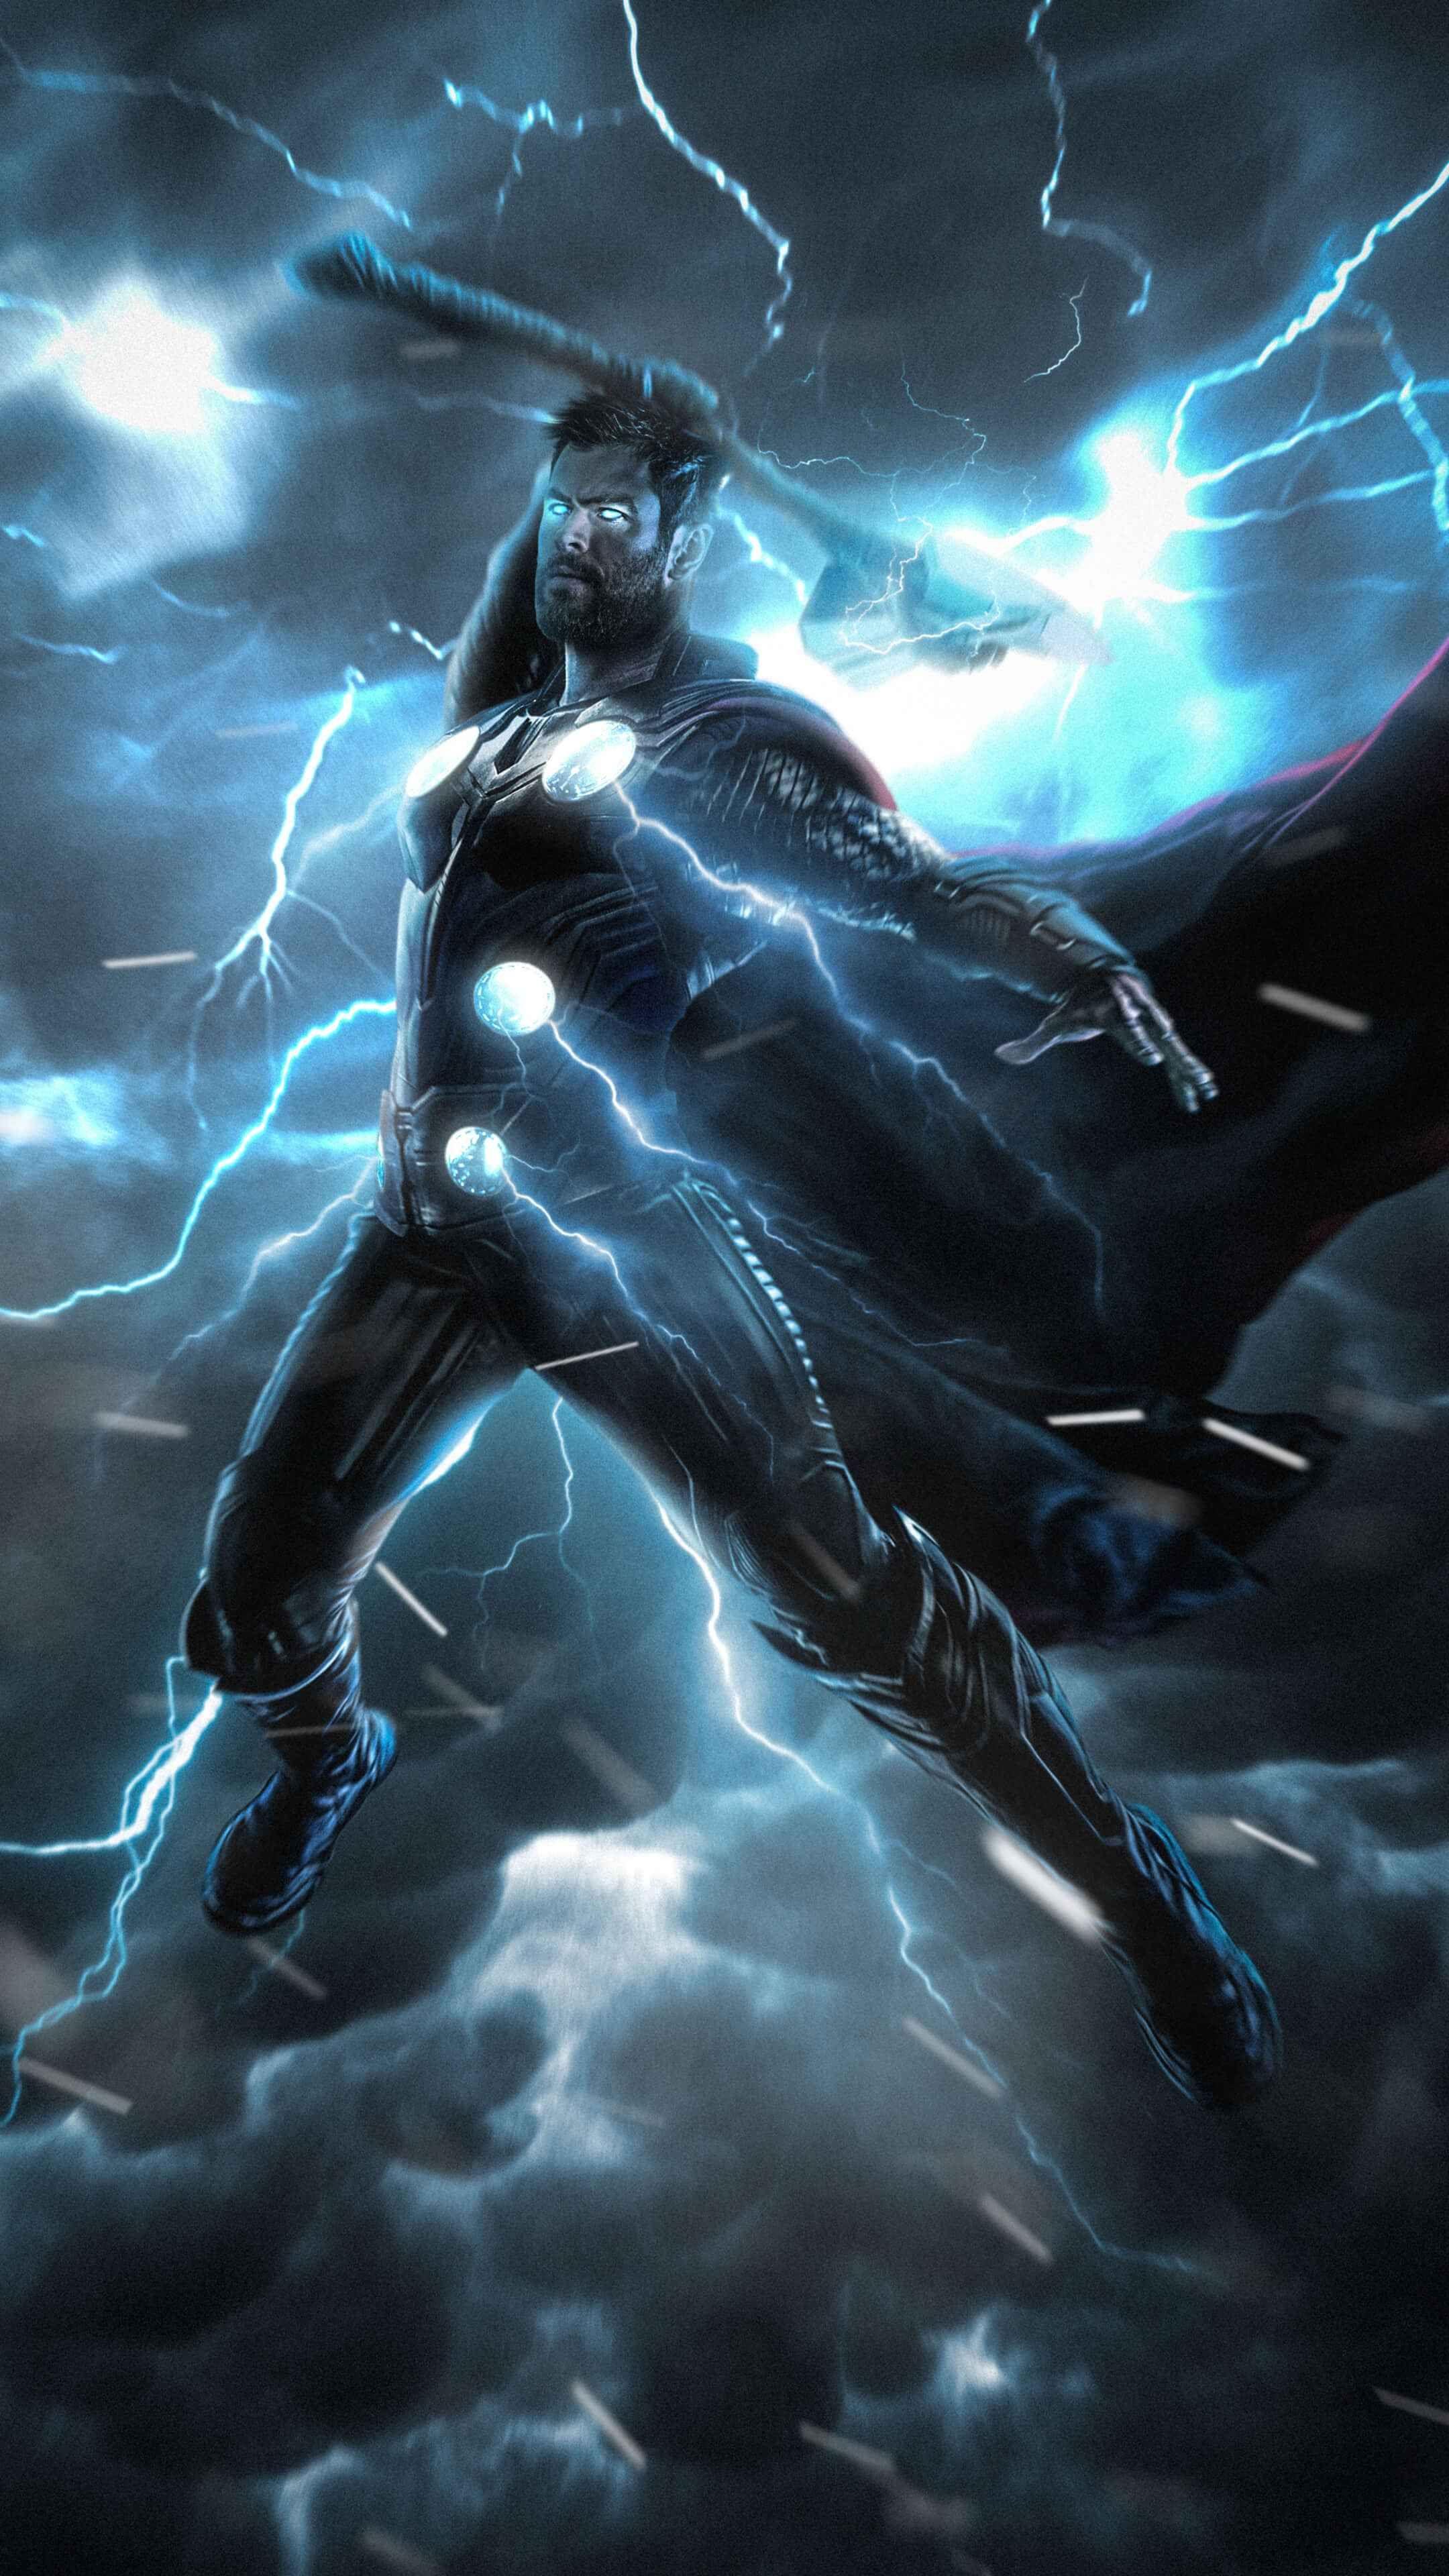 Stormbreaker Thor Avengers 4 Artwork Wallpaper and Free Stock